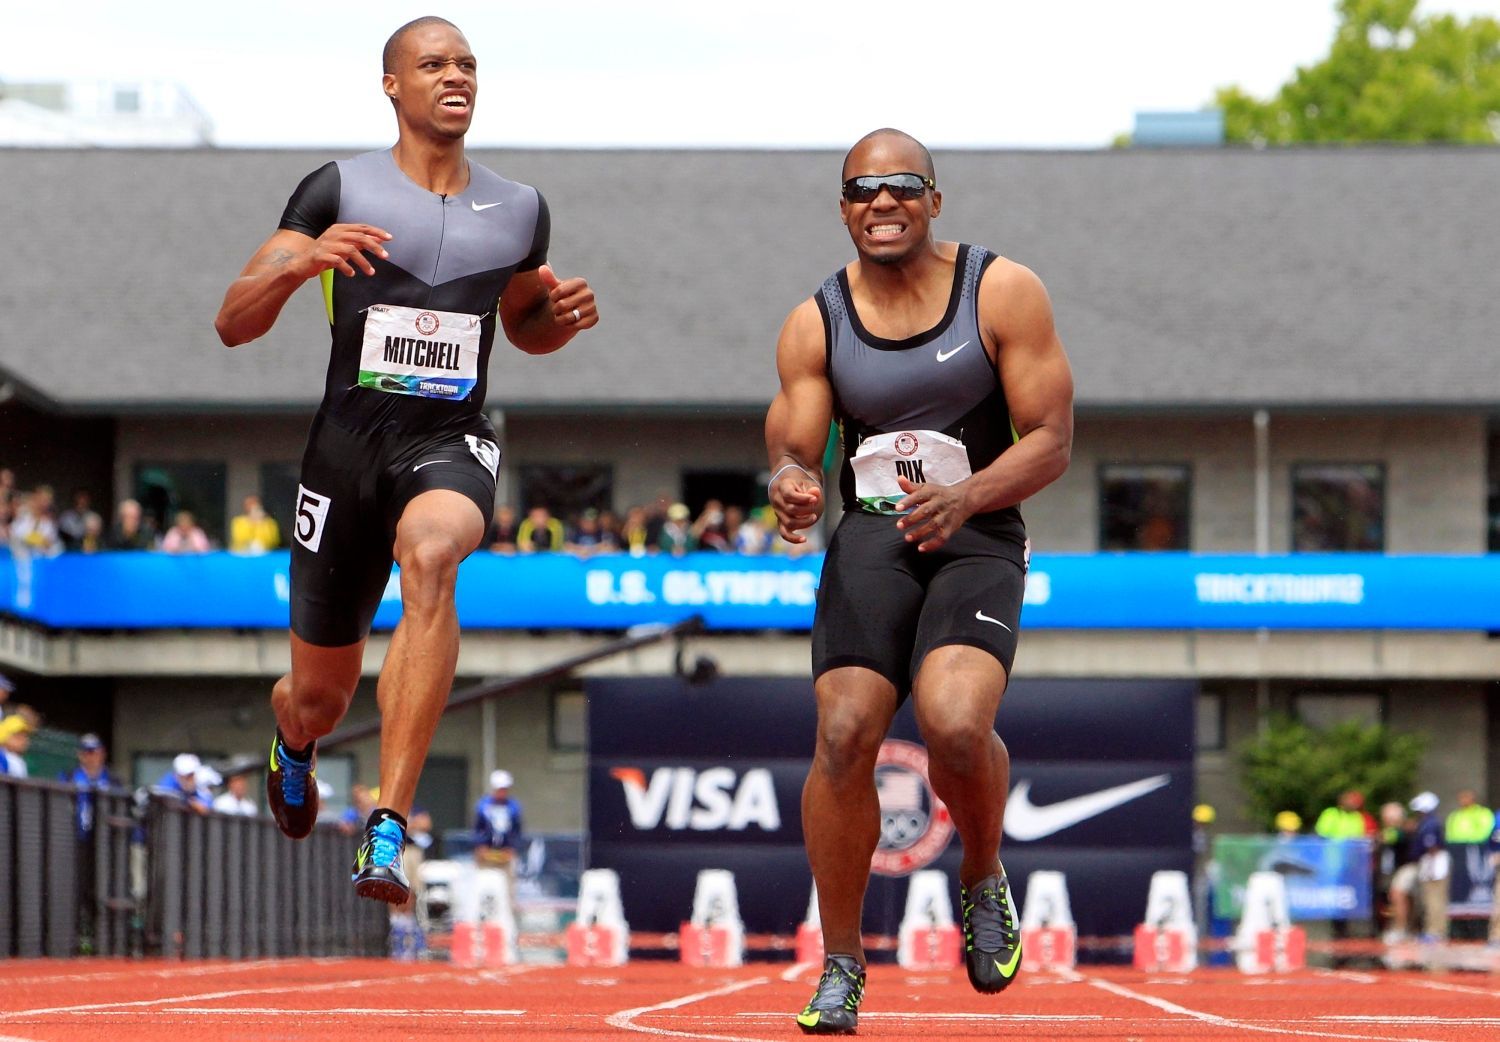 Sprinteři Maurice Mitchell (vlevo) a Walter Dix během závodu na 100 metrů během americké kvalifikace v Eugene 2012.